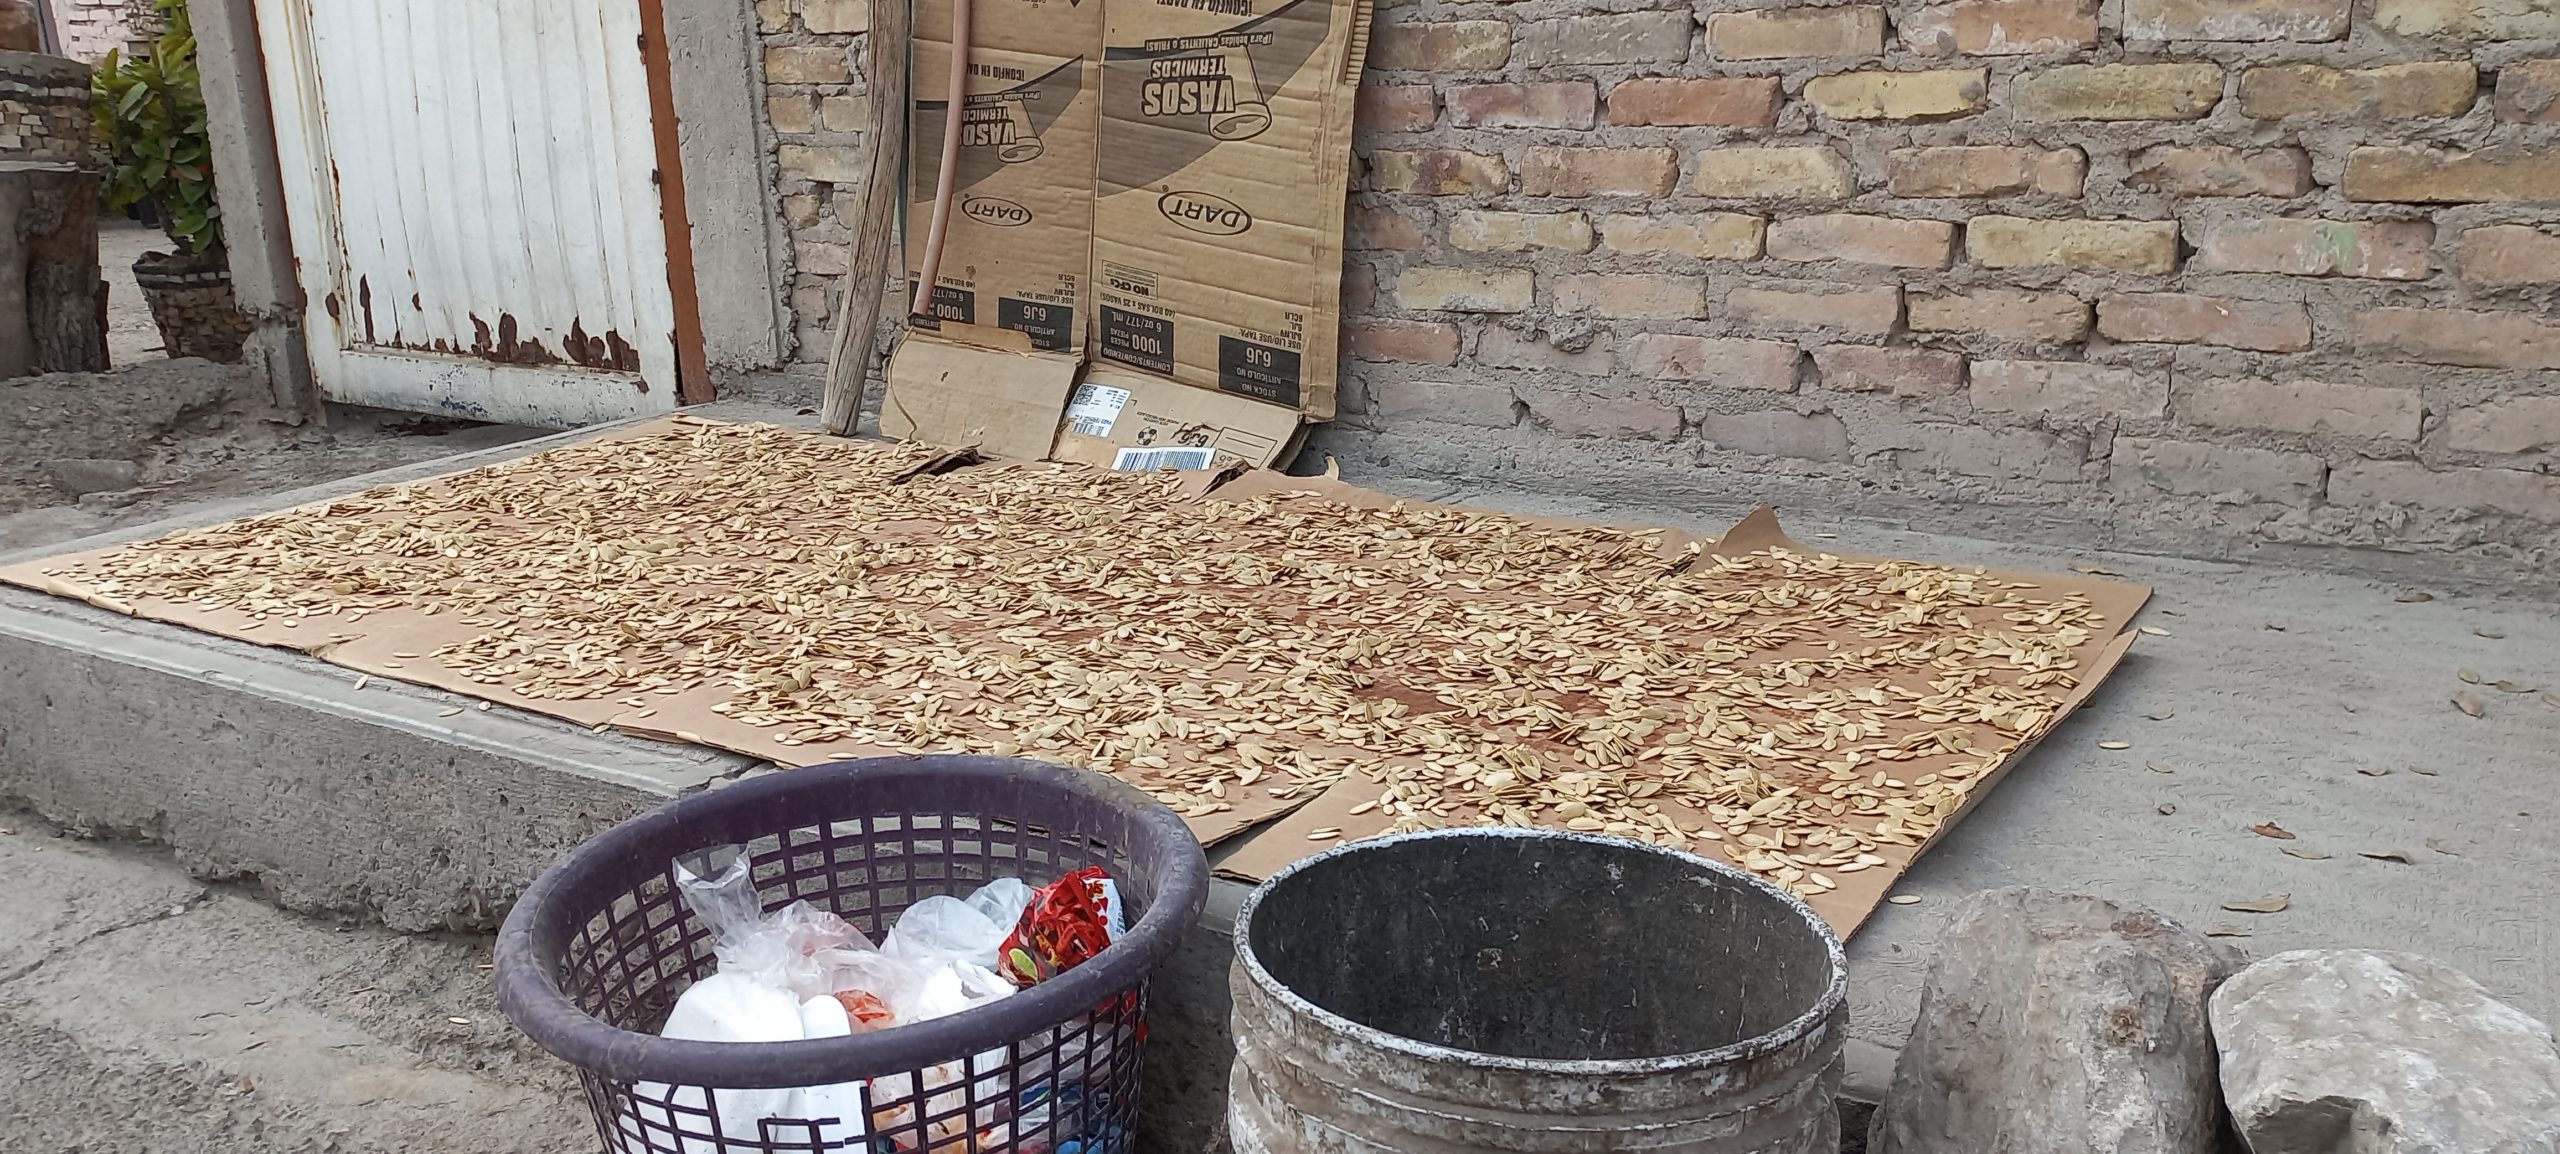 Es habitual ver a las mujeres secando semillas de calabaza que después venden en los cruceros. Crédito: Soledad Galván